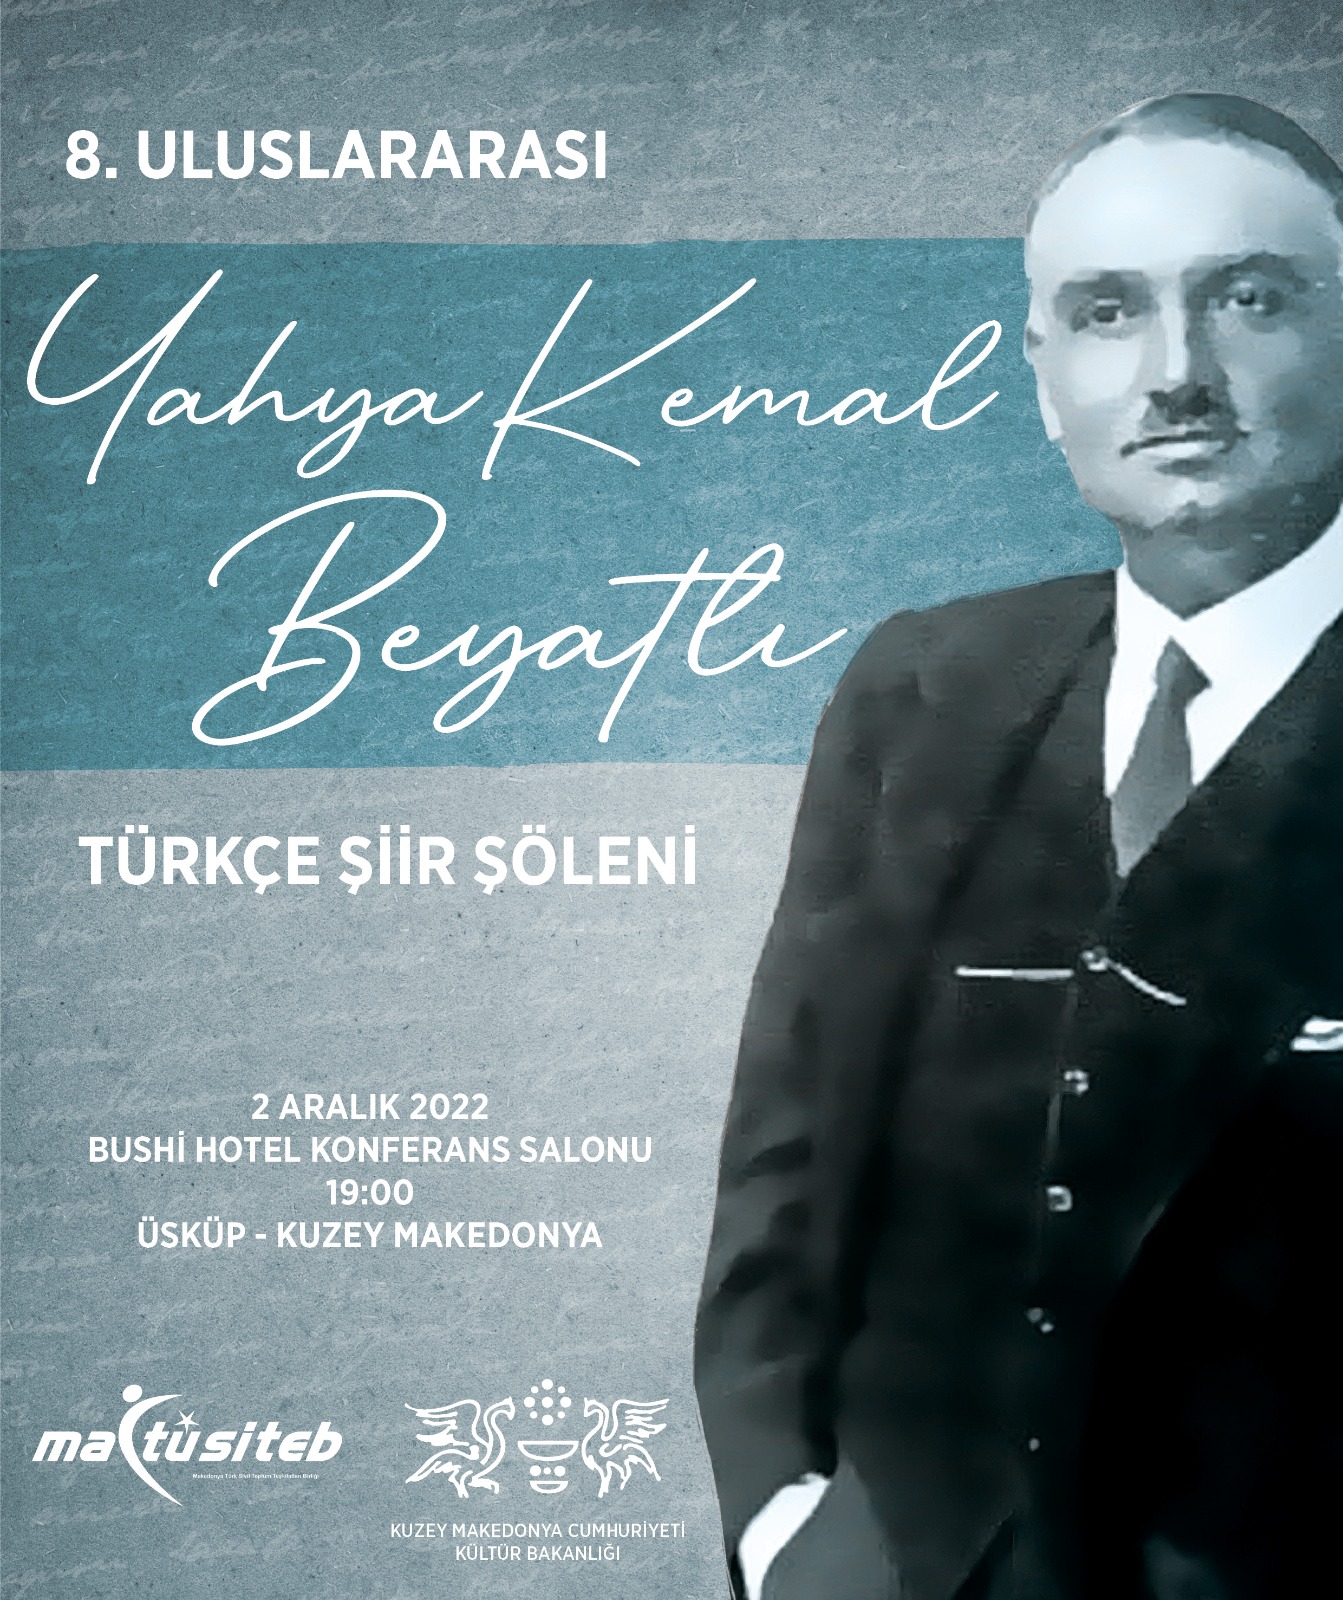 Üsküp’te, “8. Uluslararası Yahya Kemal Beyatlı Türkçe Şiir Şöleni” düzenlenecek